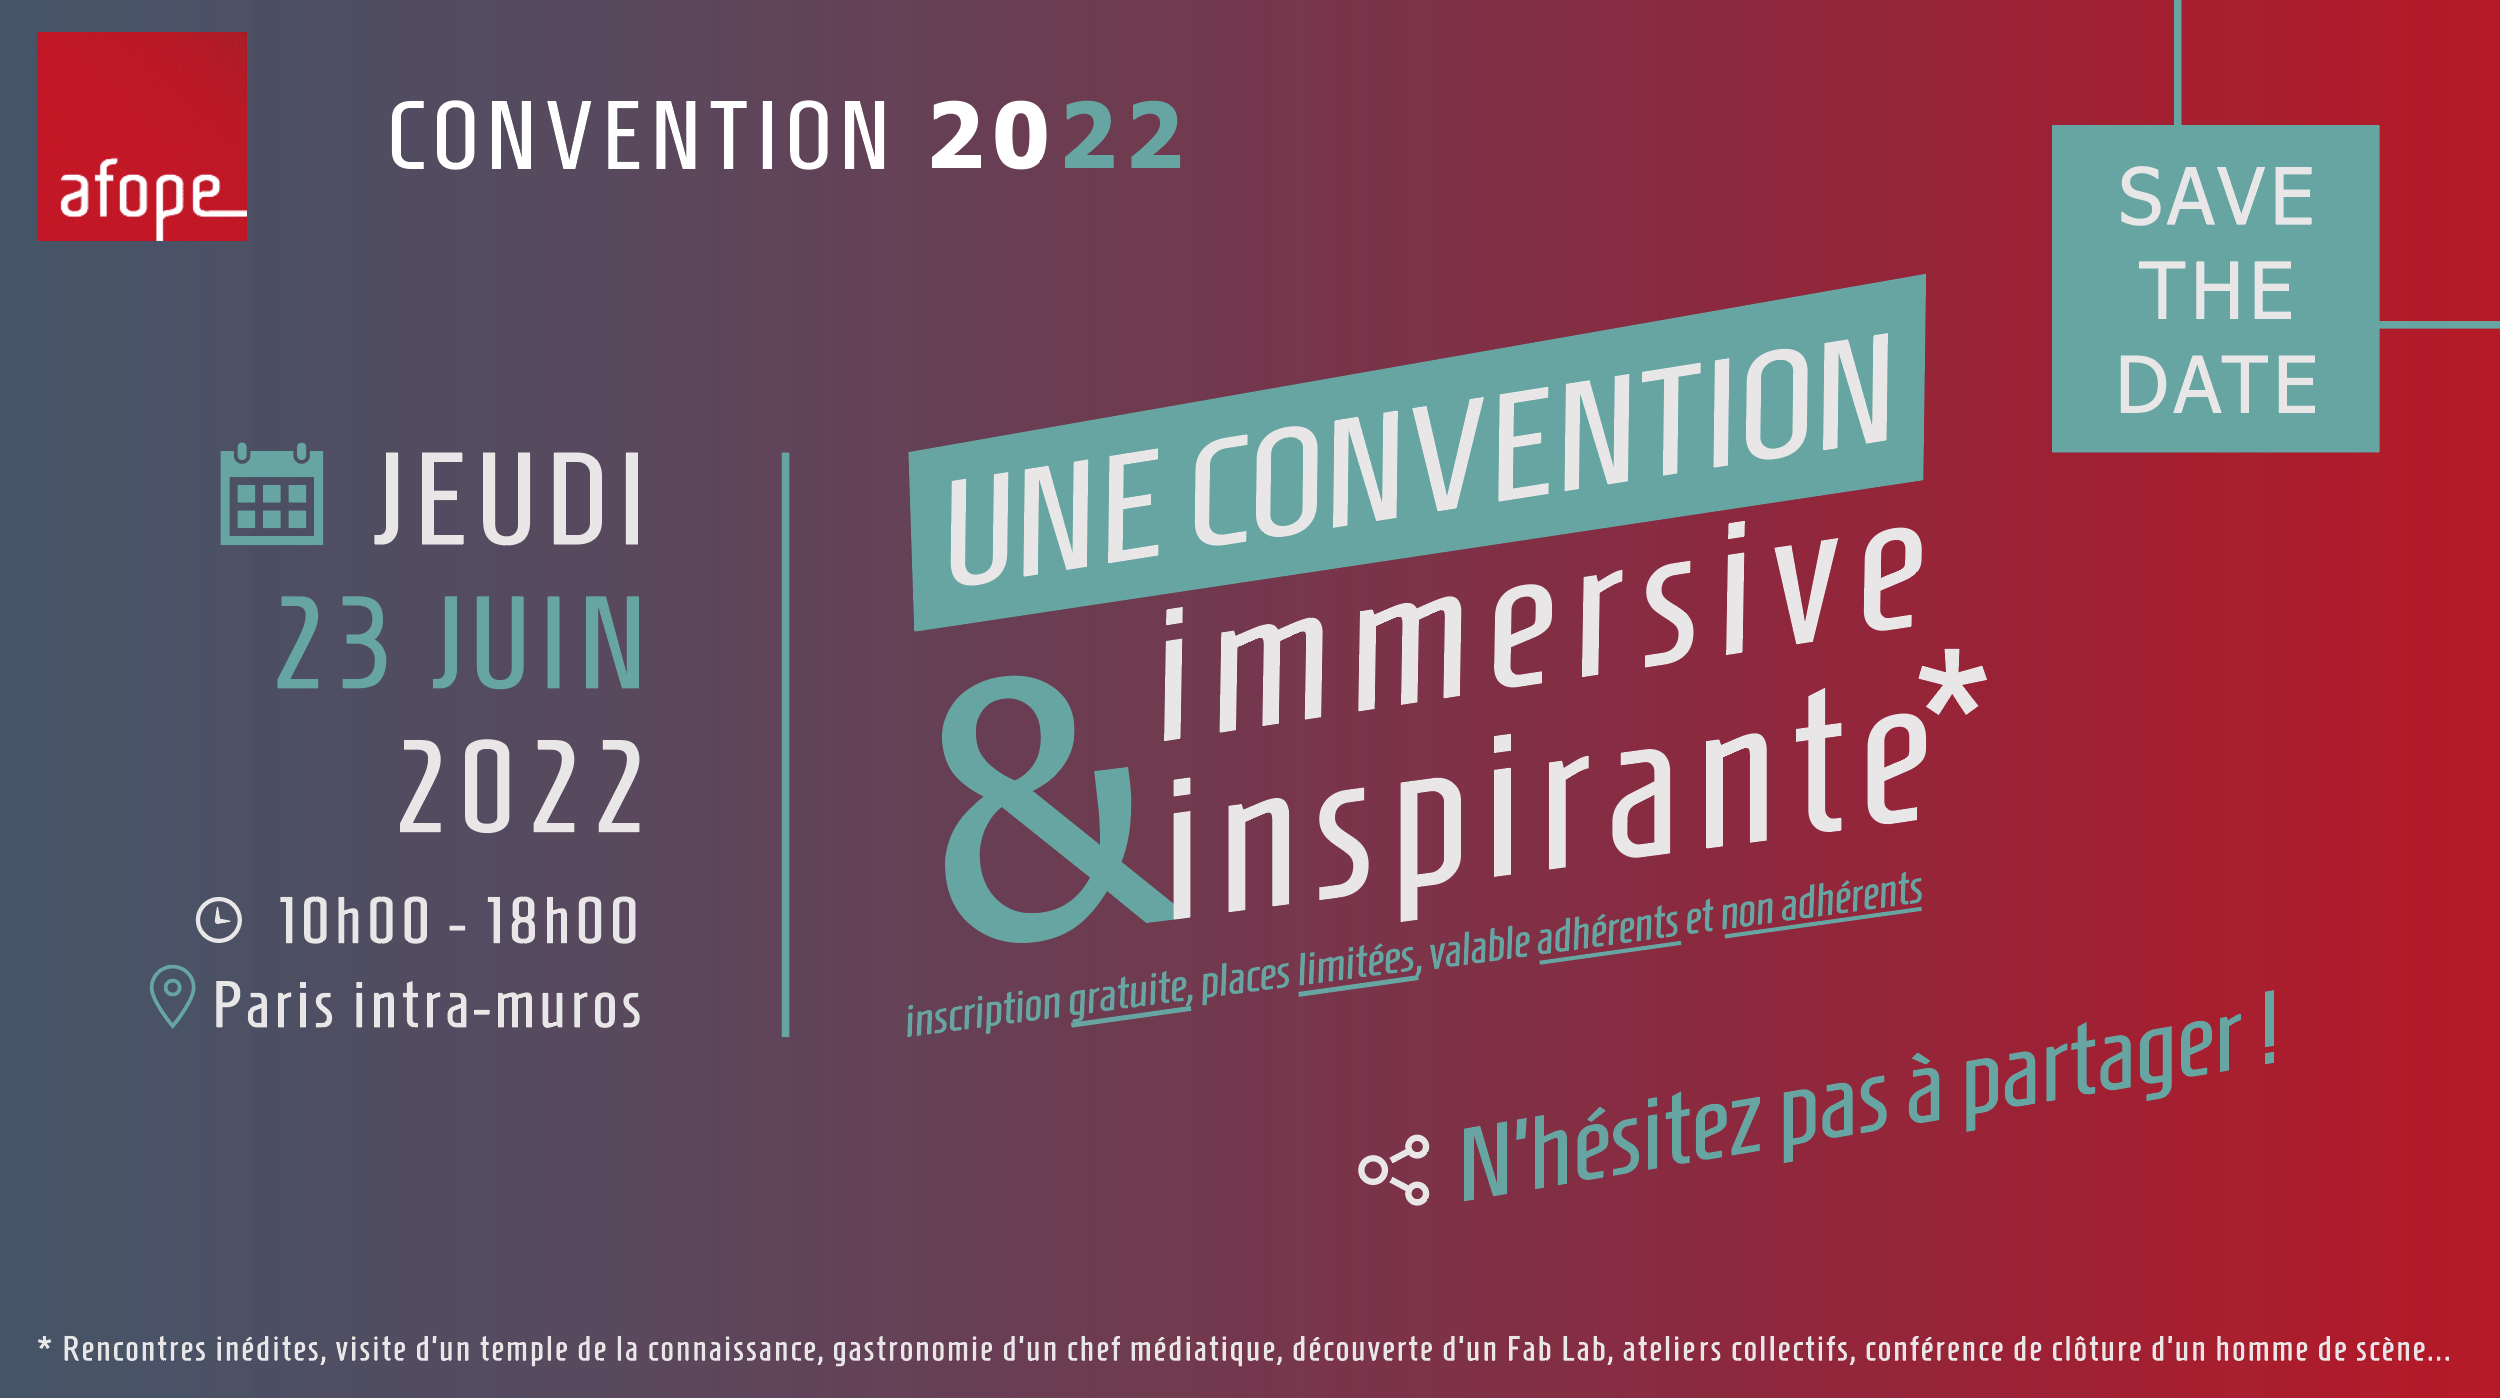 Lire la suite à propos de l’article Convention 2022 : une convention immersive inspirante